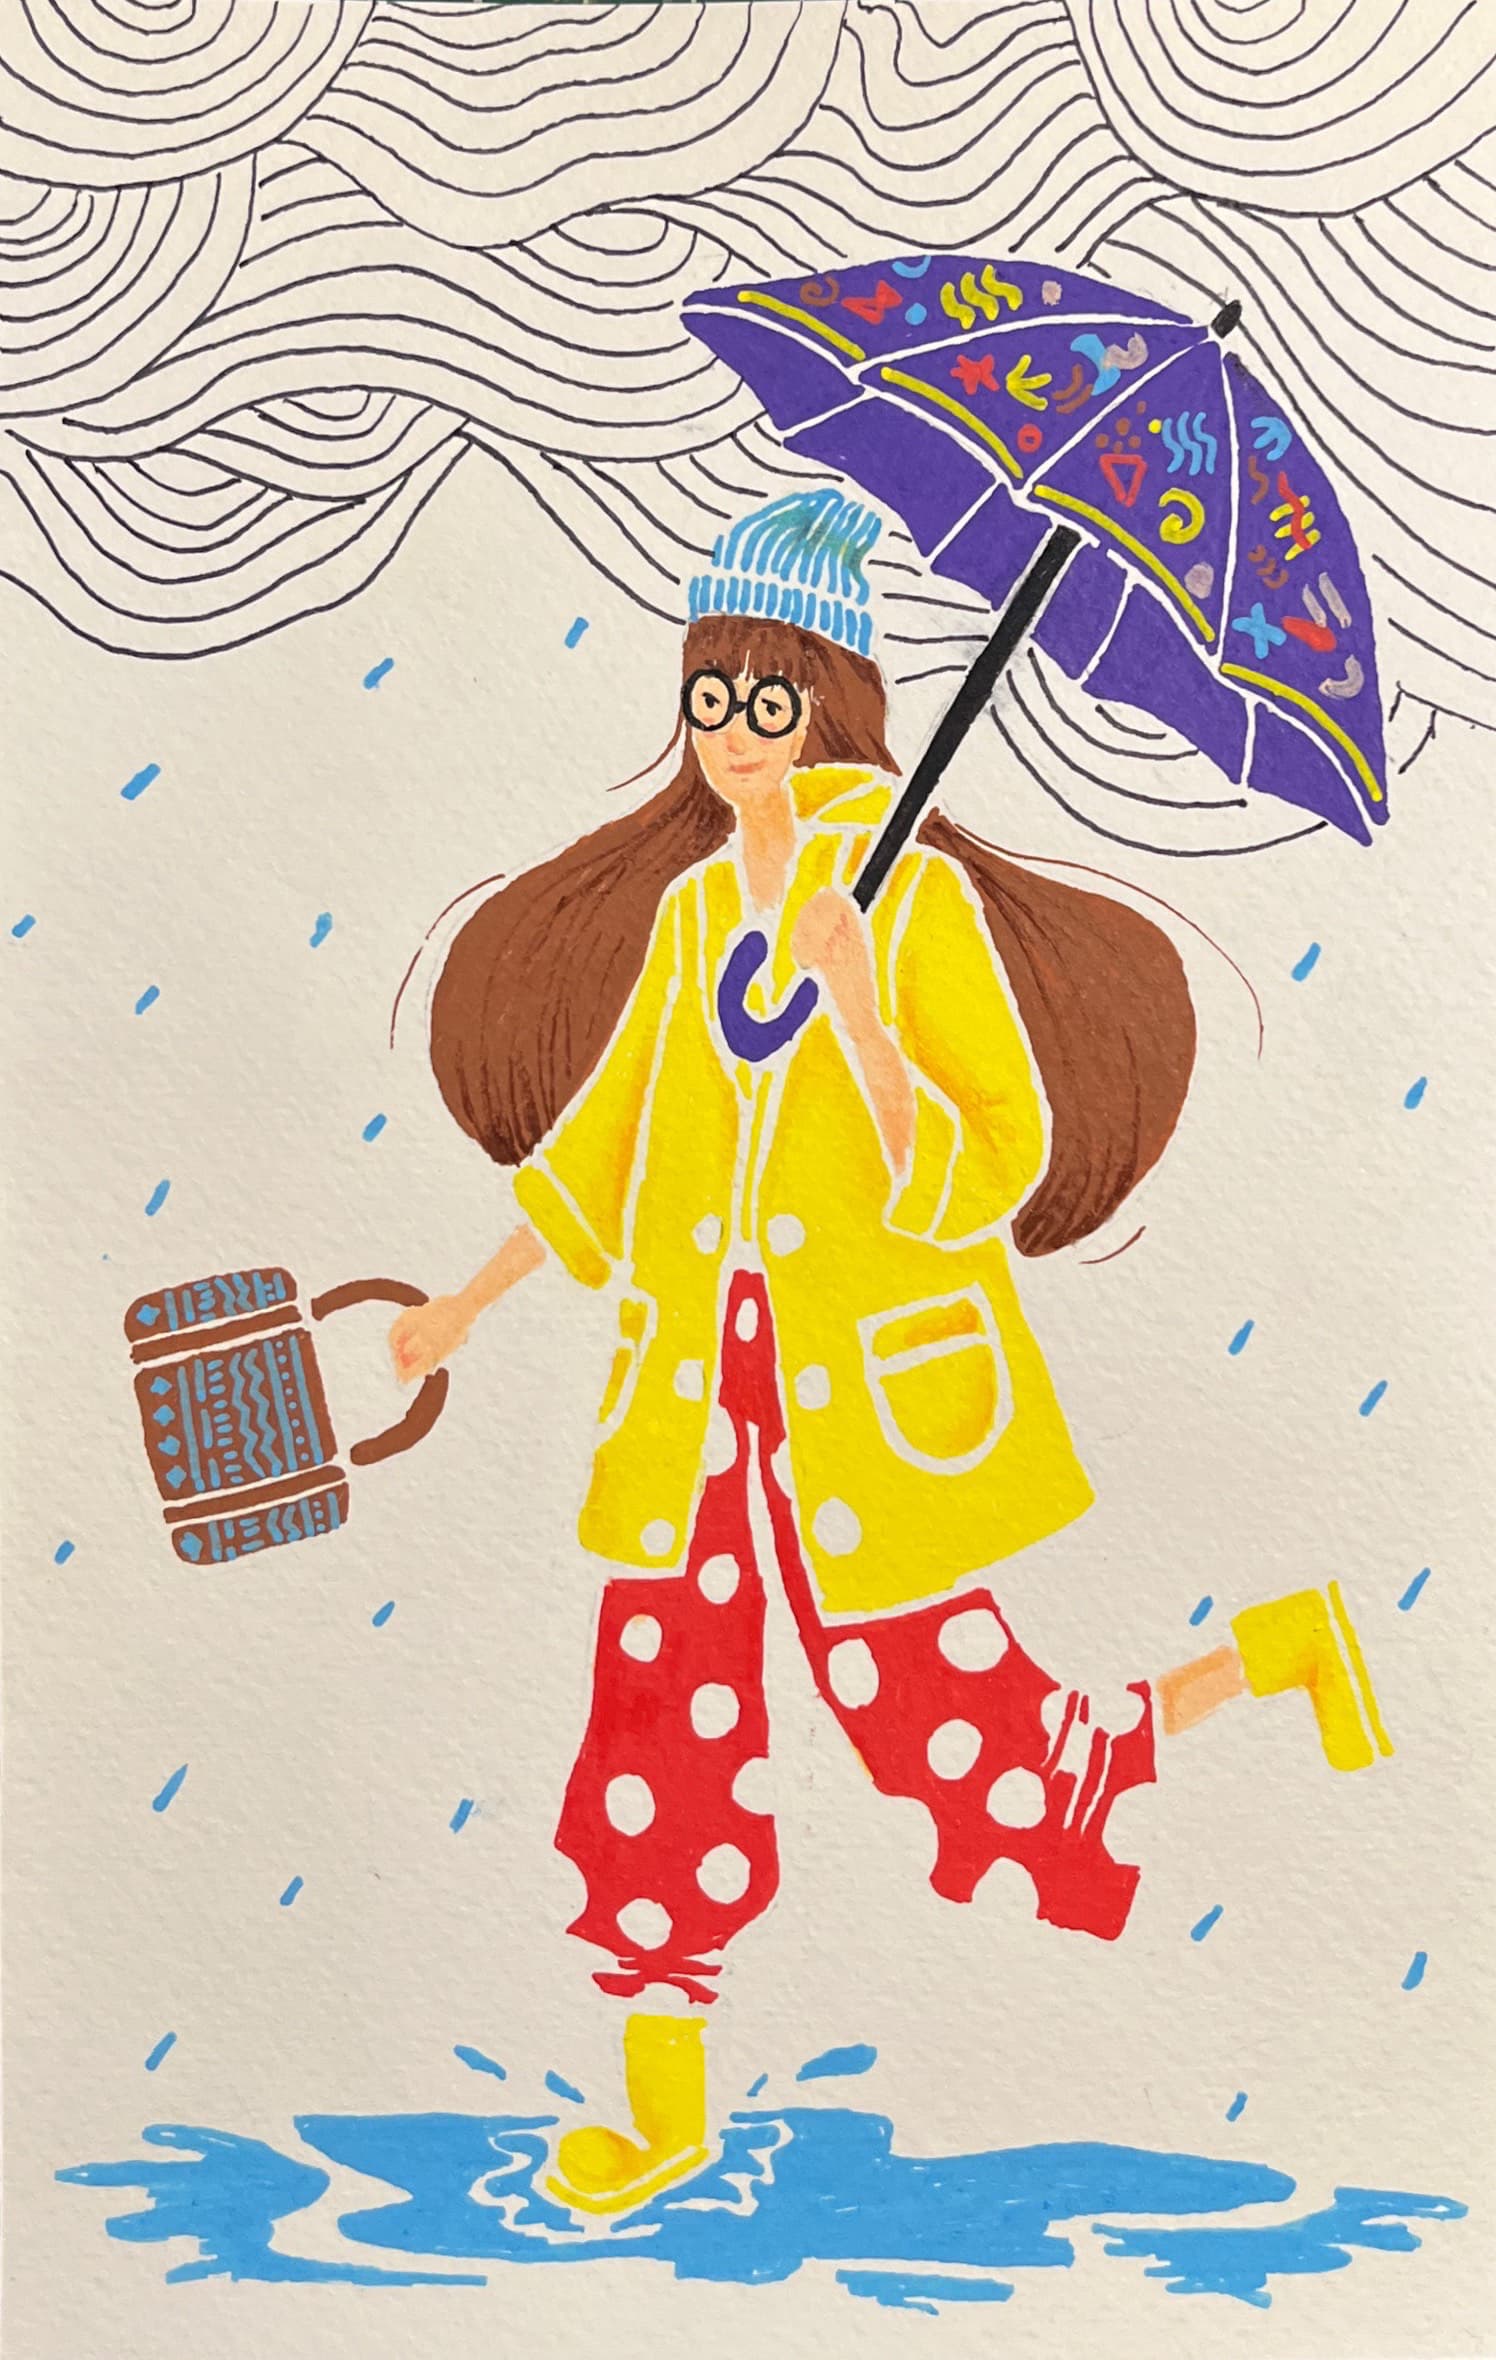 Cartolina Rainy day - Pintor image0